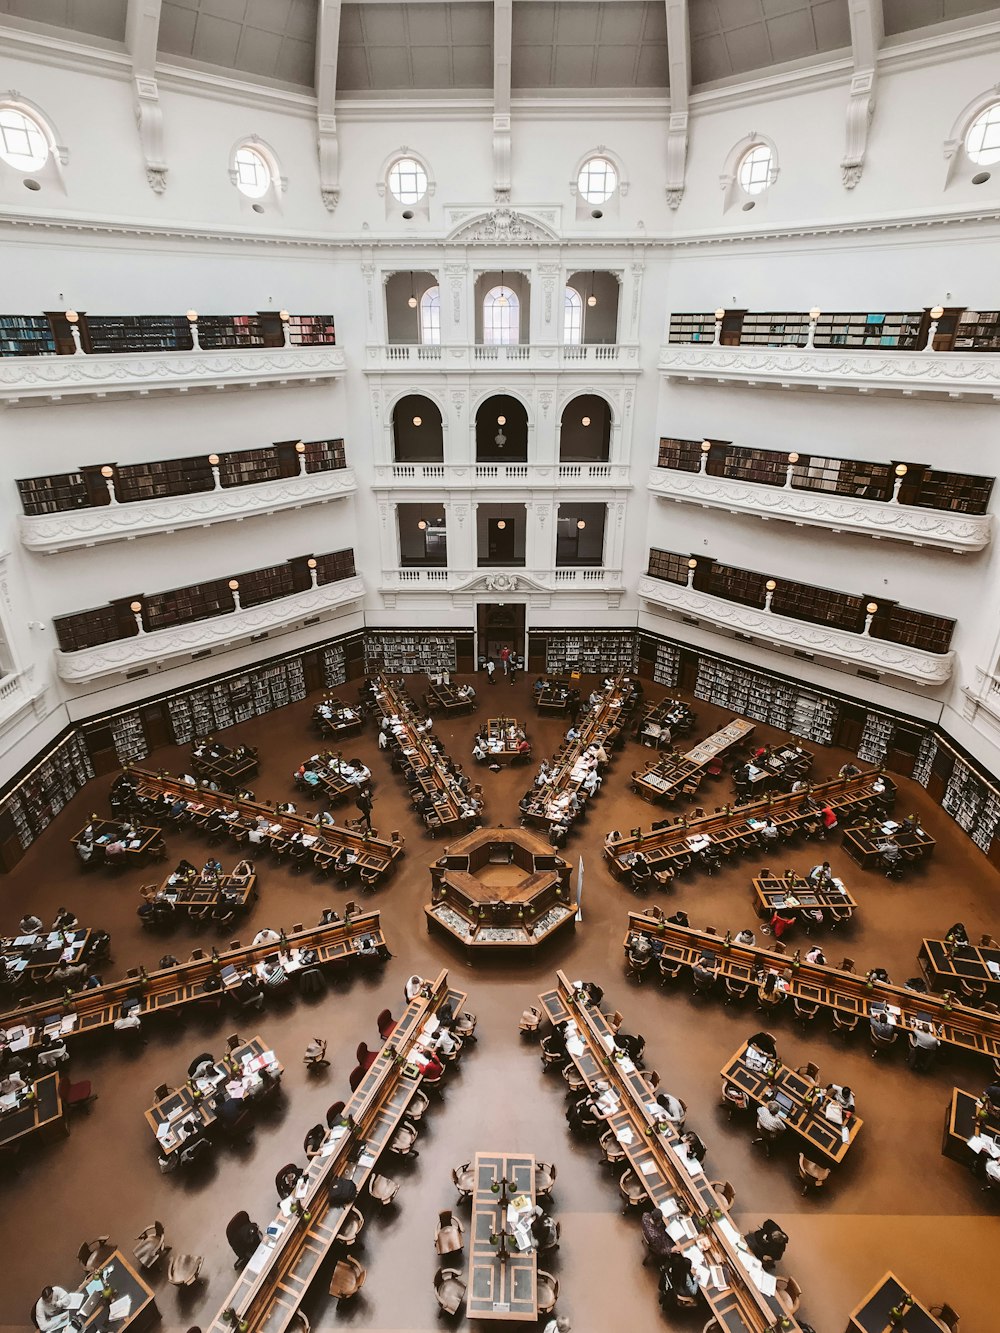 Fotografia aerea dell'interno dell'edificio della biblioteca